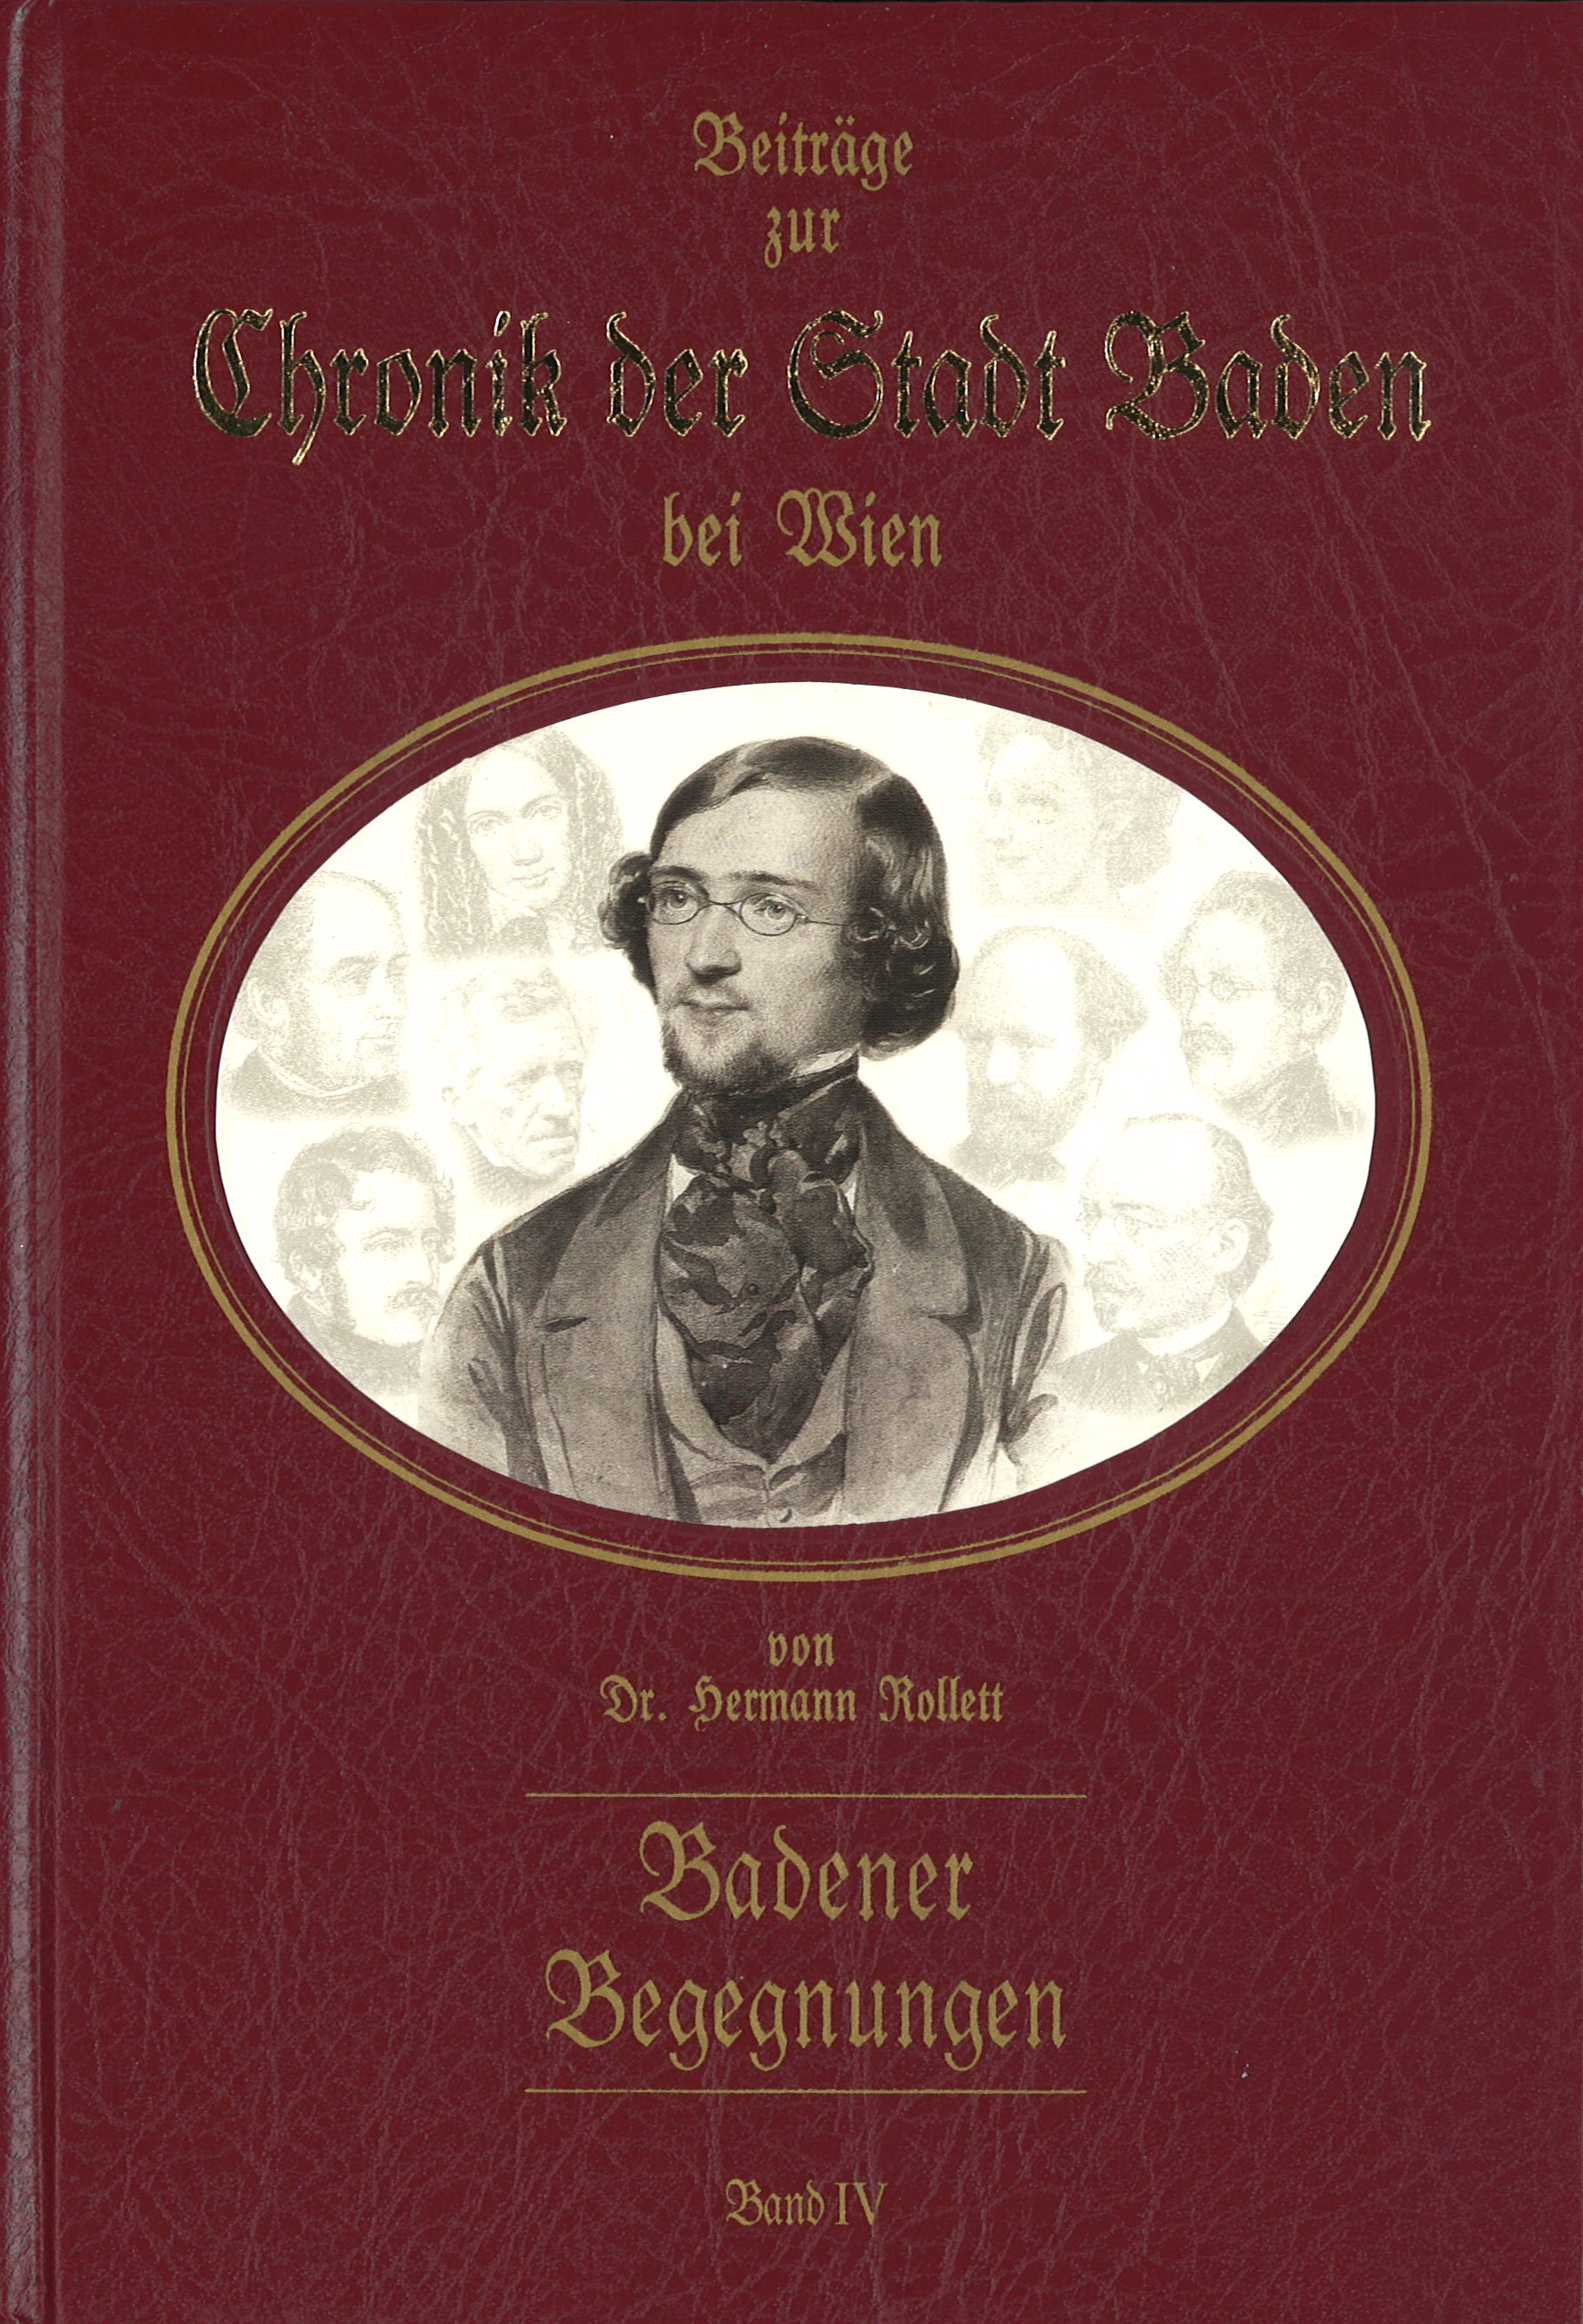 Beiträge zur Chronik Chronik der Stadt Baden bei Wien von Dr. Hermann Rollett Band 4, 319 Seiten, Rudolf Maurer € 49,00